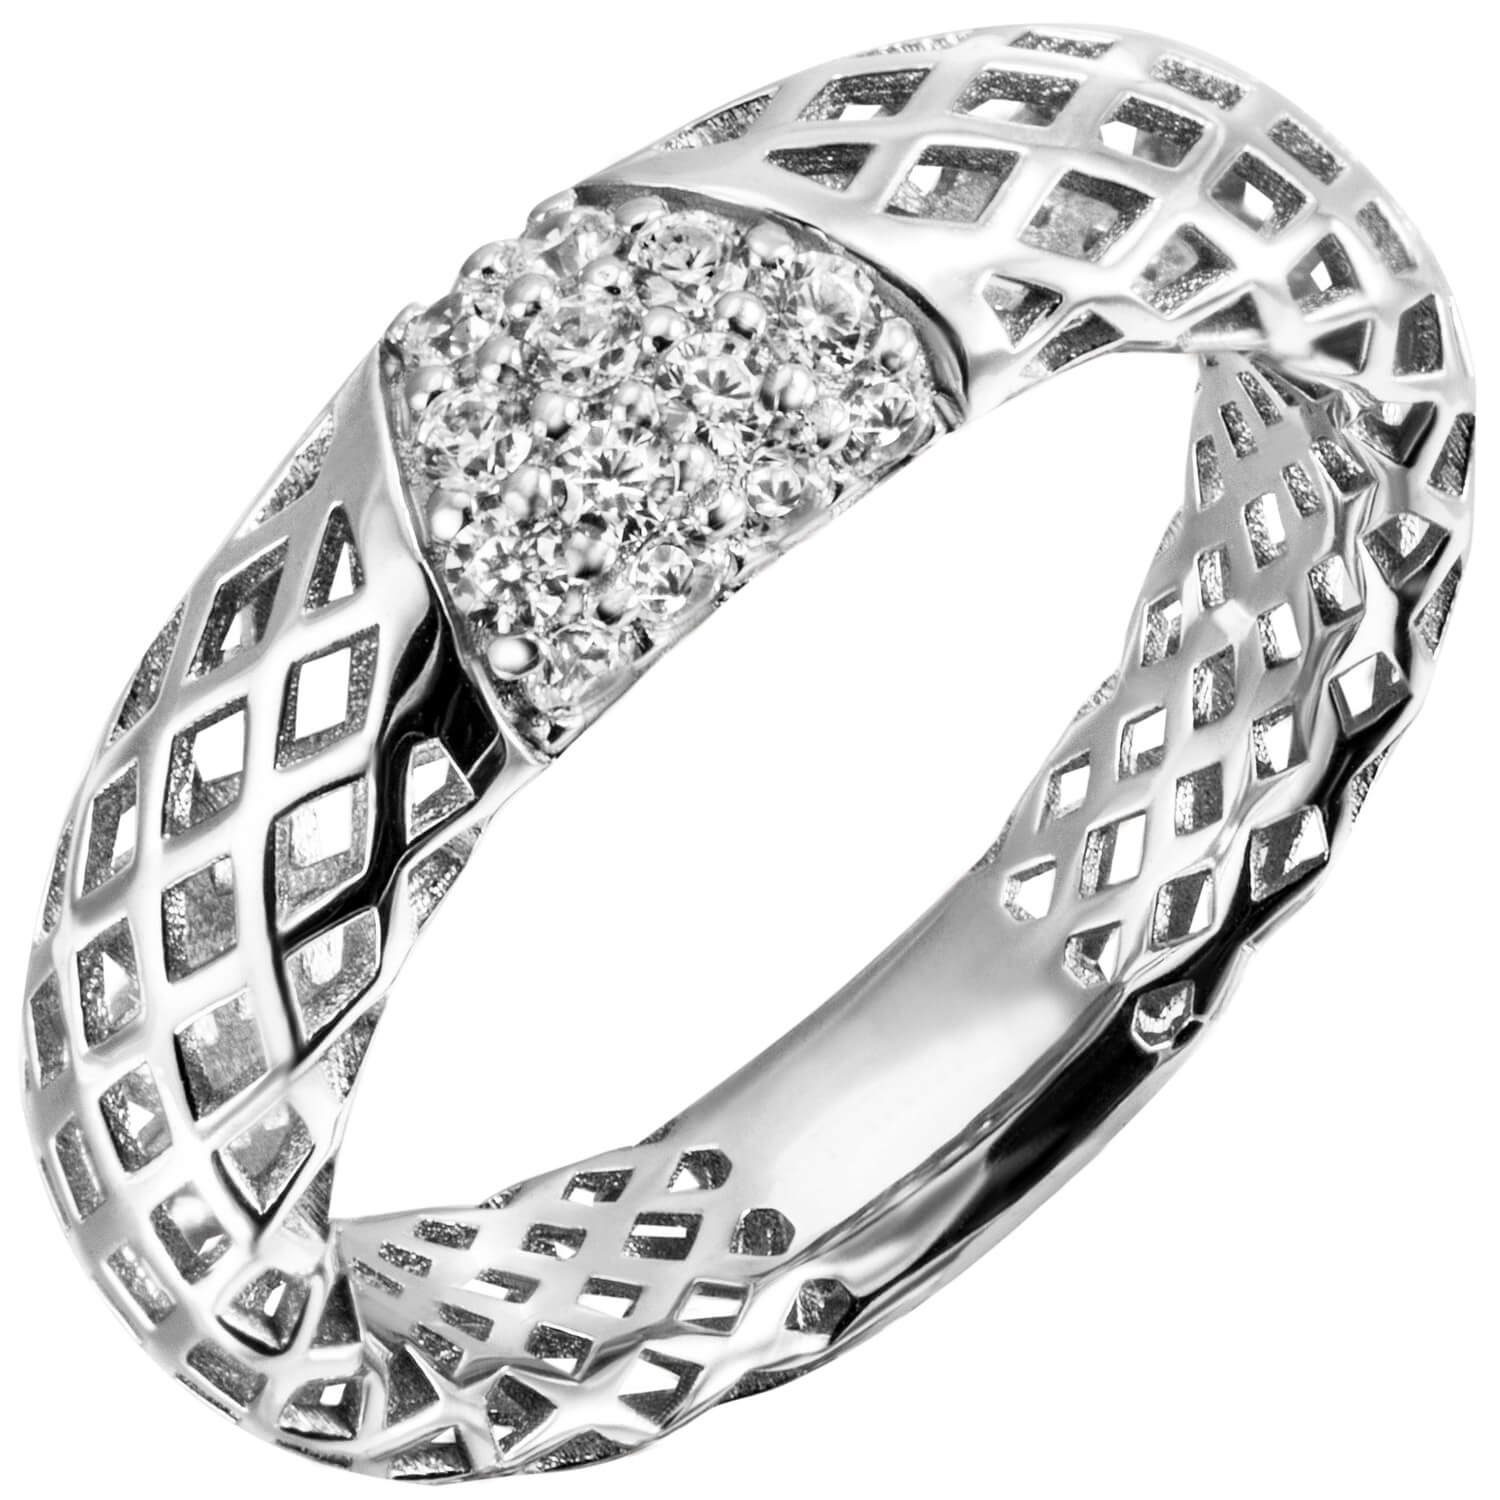 Schmuck Krone Silberring Ring mit 14 Zirkonia weiß 925 Silber rhodiniert Damenring glänzend Netz-Muster, Silber 925 | Silberringe